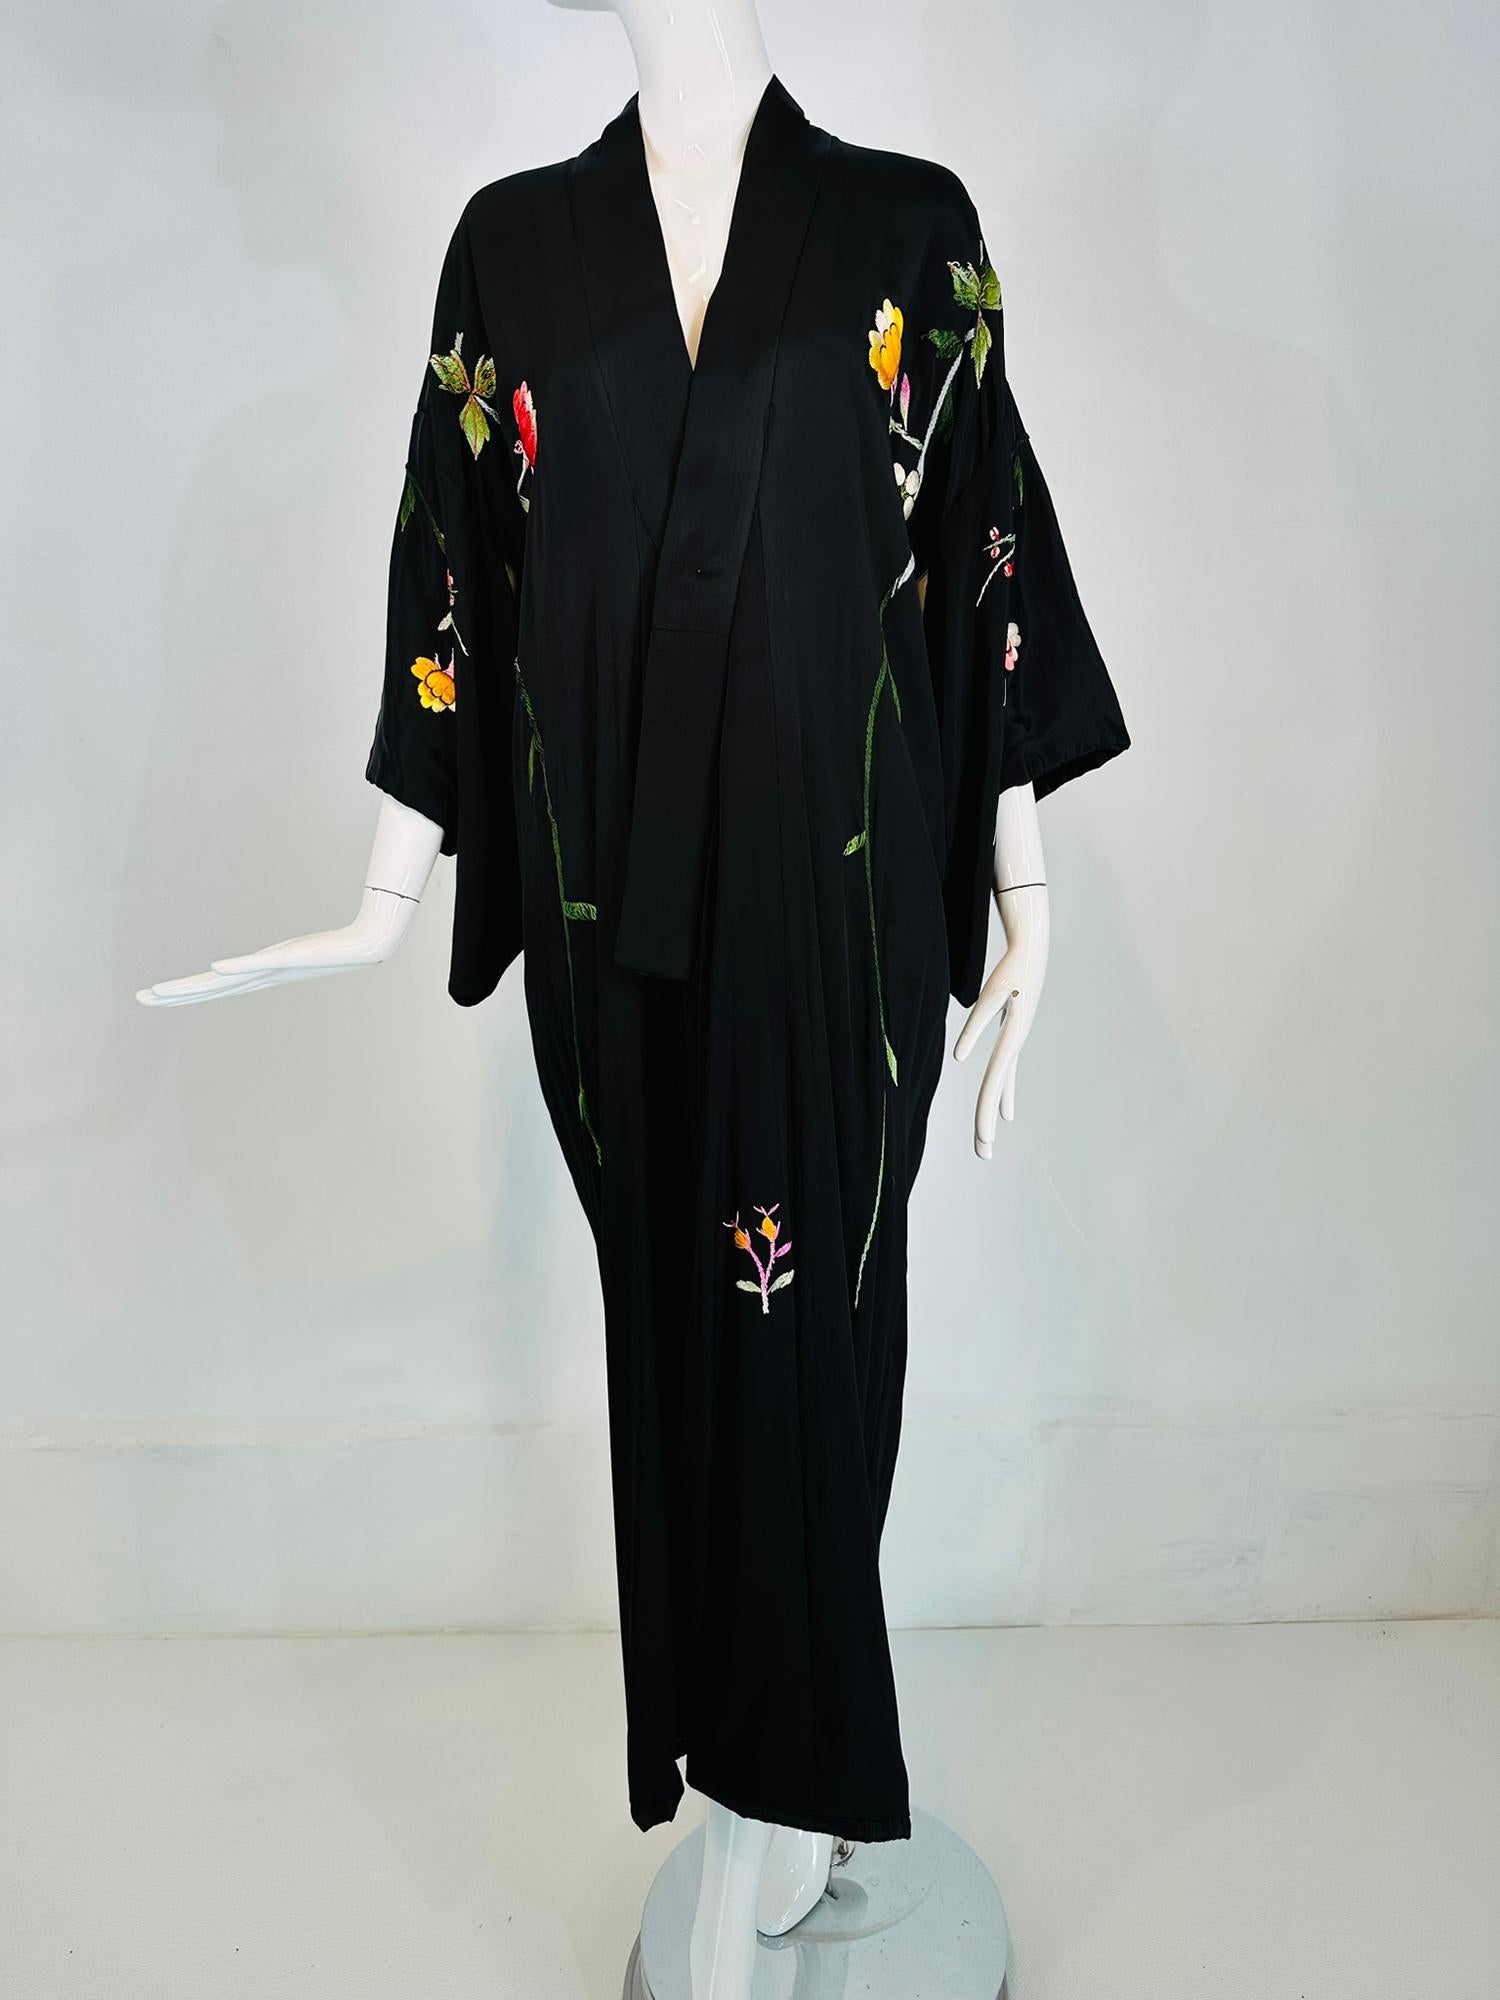 Robe kimono vintage en rayonne noire lourdement brodée de fleurs, datant des années 1930-40. Peignoir enveloppant doublé de tissu de rayonne noir, avec des manches de style kimono aux ourlets roulés et paddés. La robe est longue. Broderie florale